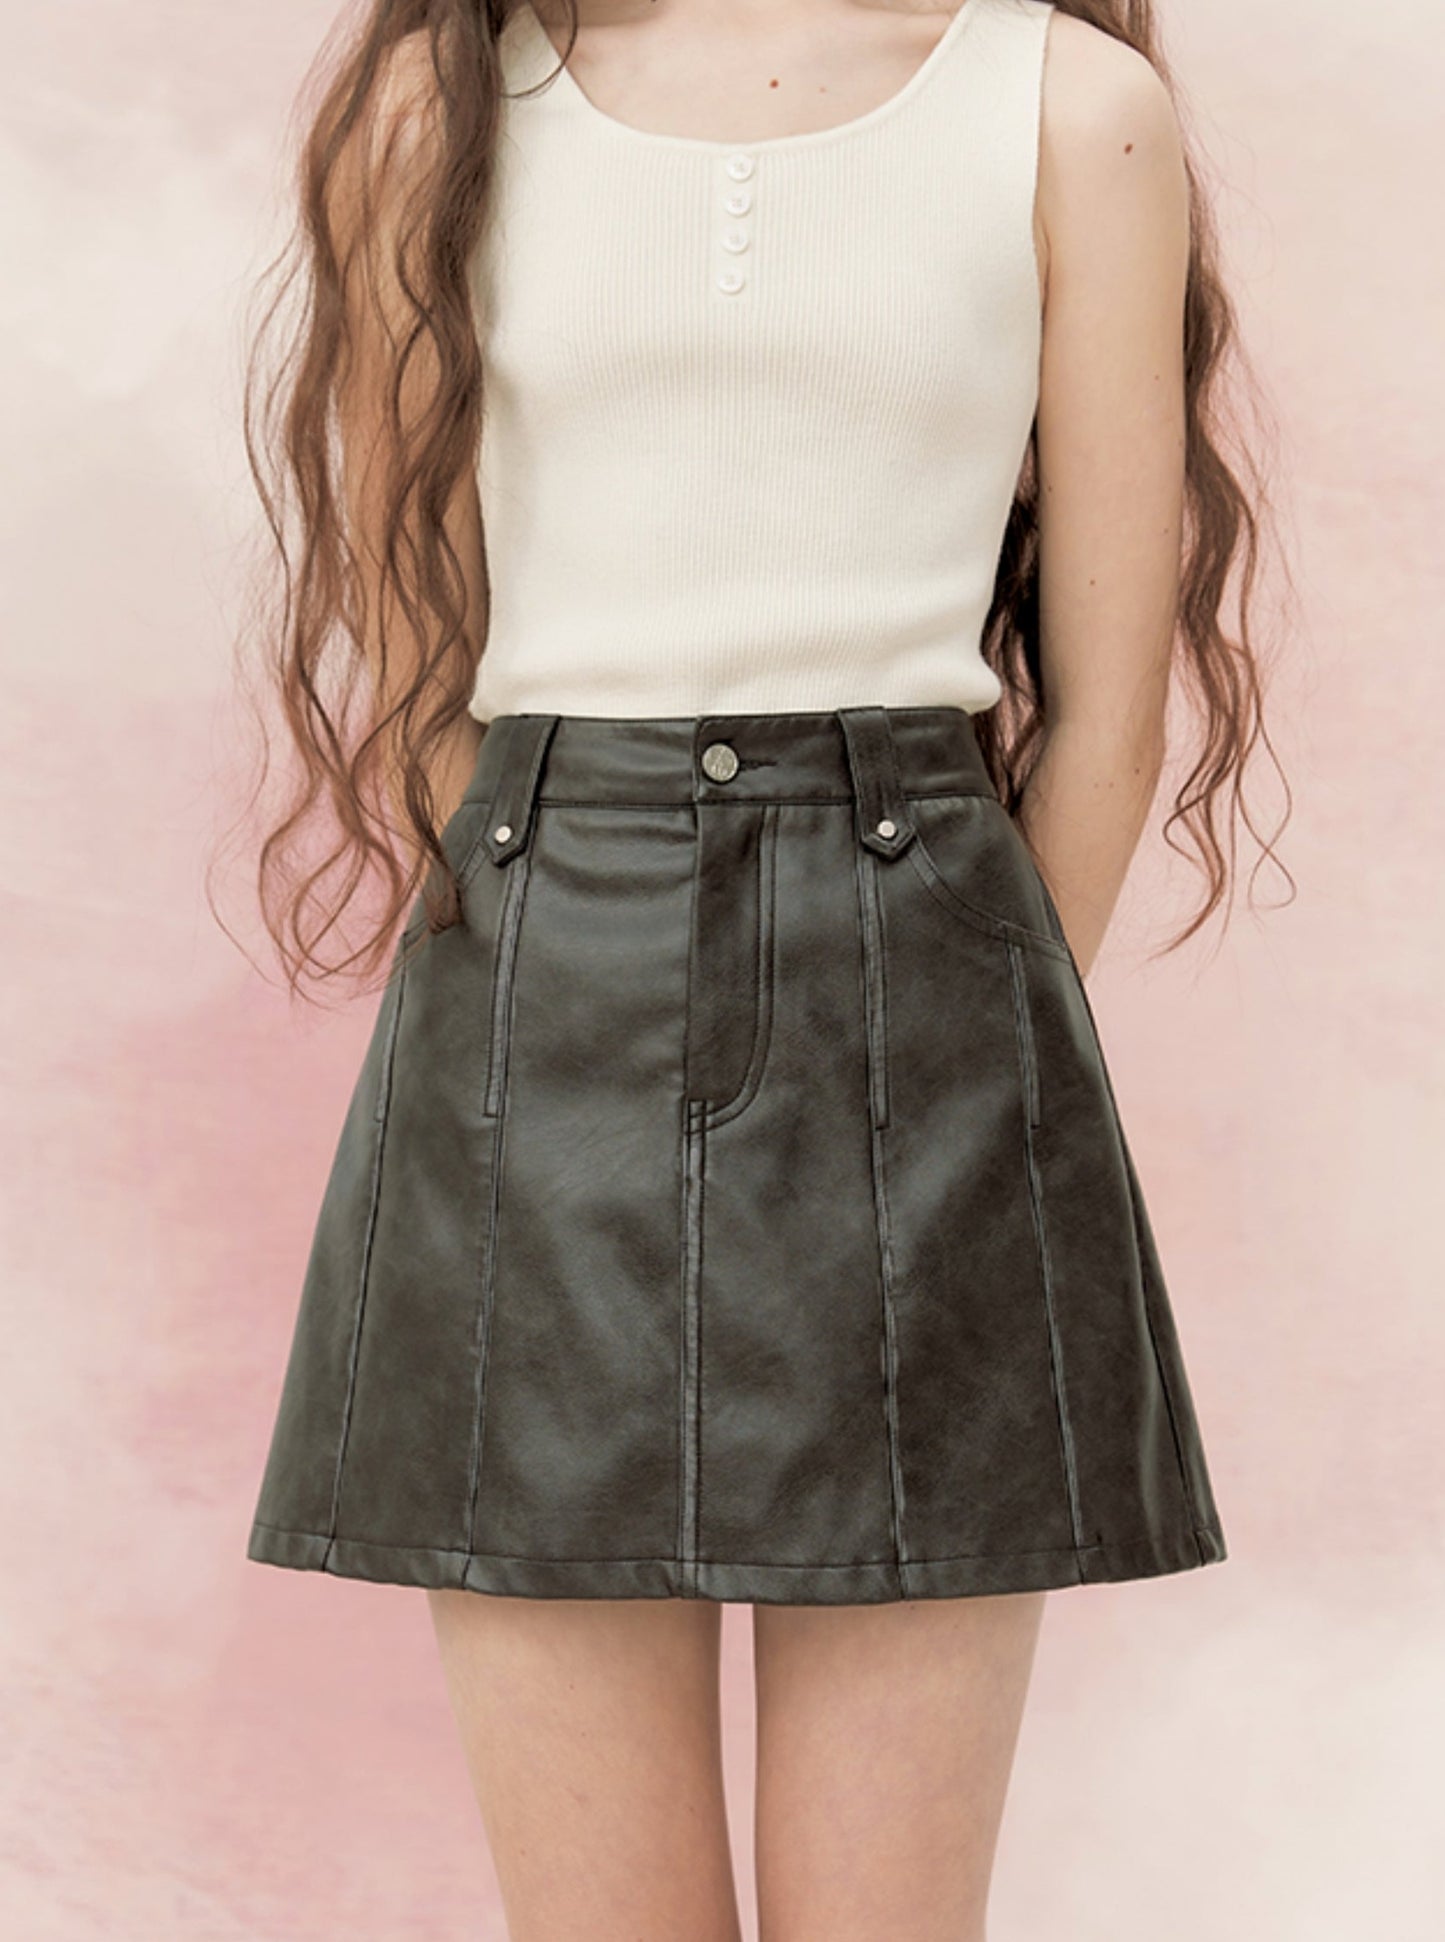 High-waisted A-line hip pleated skirt